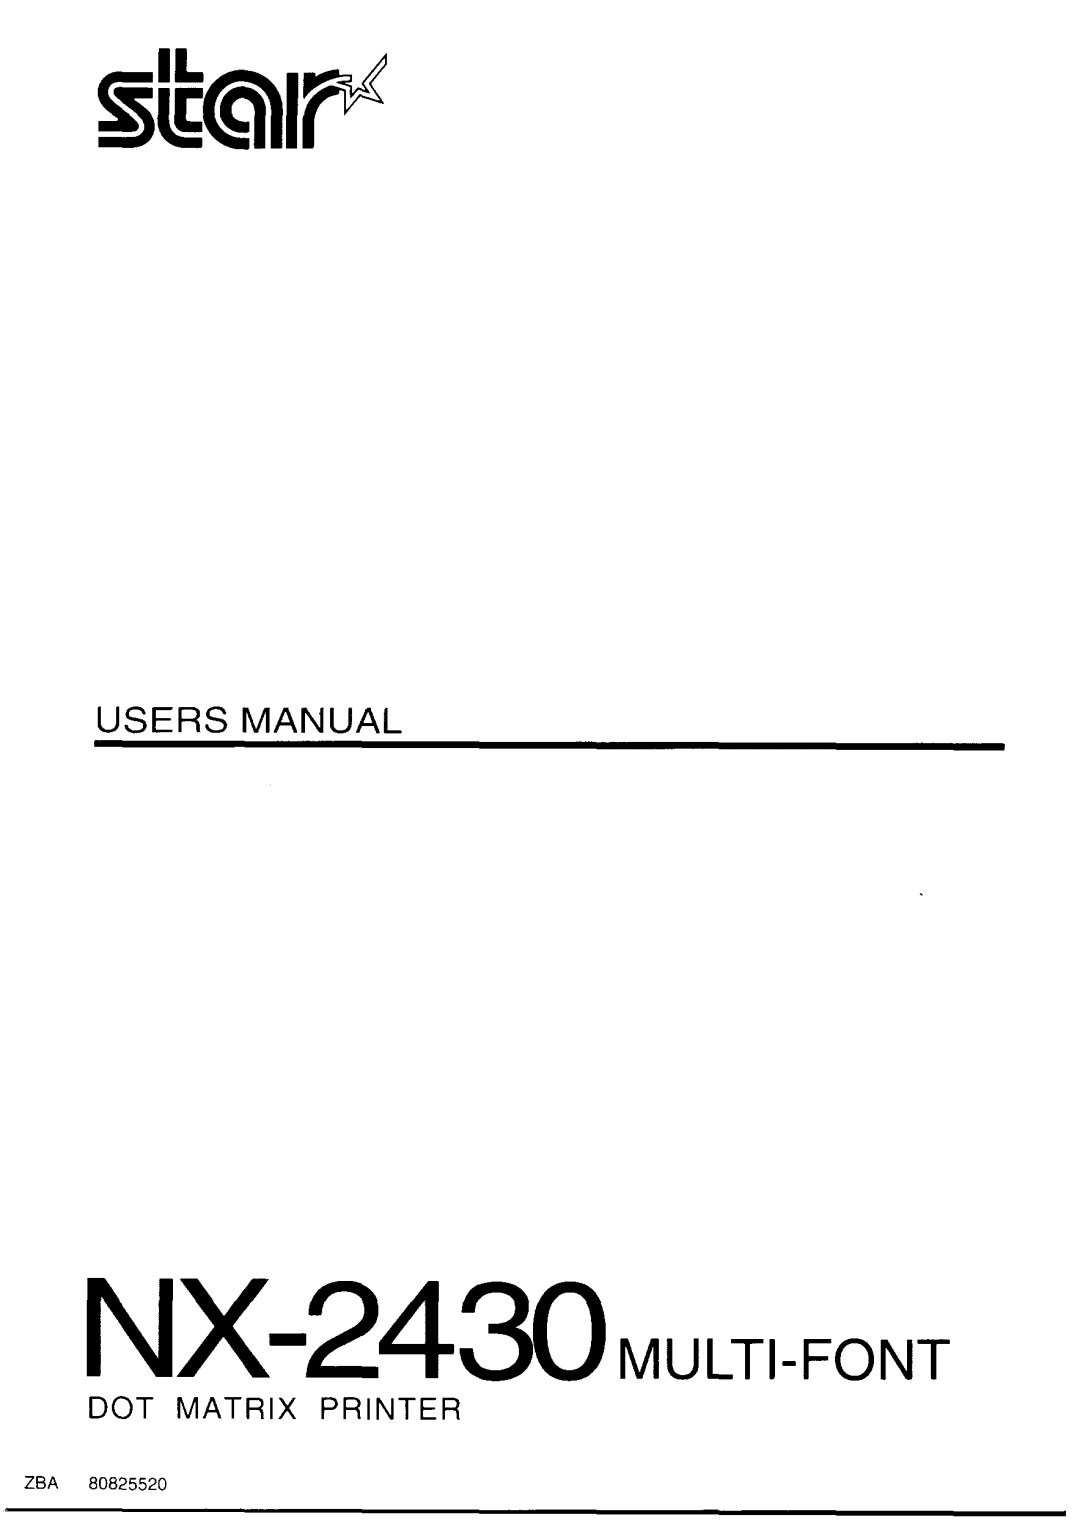 Star Micronics manual NX-2430w,-m, Users M, Dot Matrix Printer, 80825520 